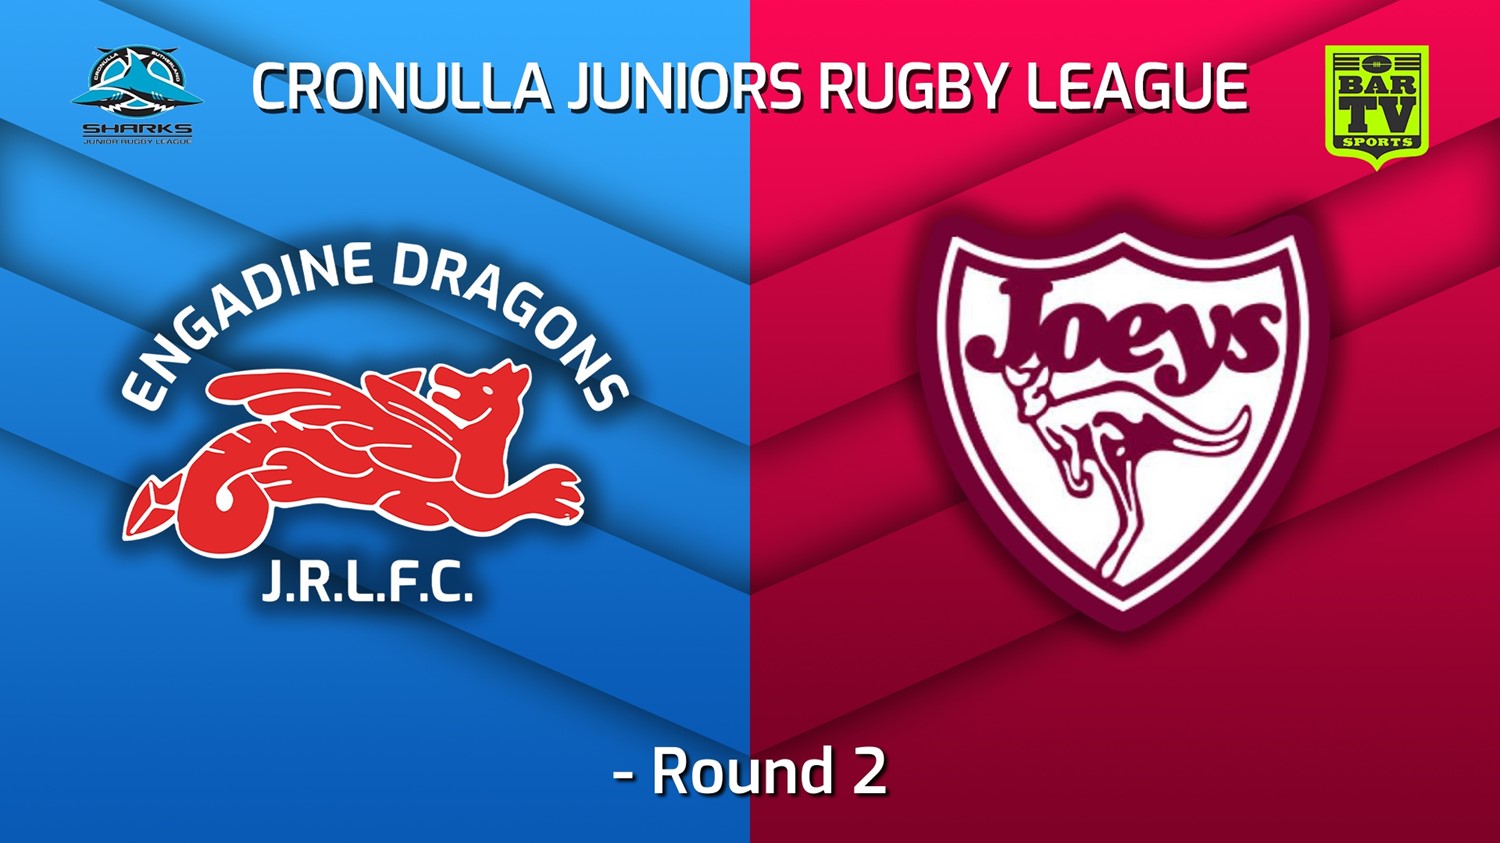 220507-Cronulla Juniors - U12 Gold Round 2 - Engadine Dragons v St Josephs Slate Image